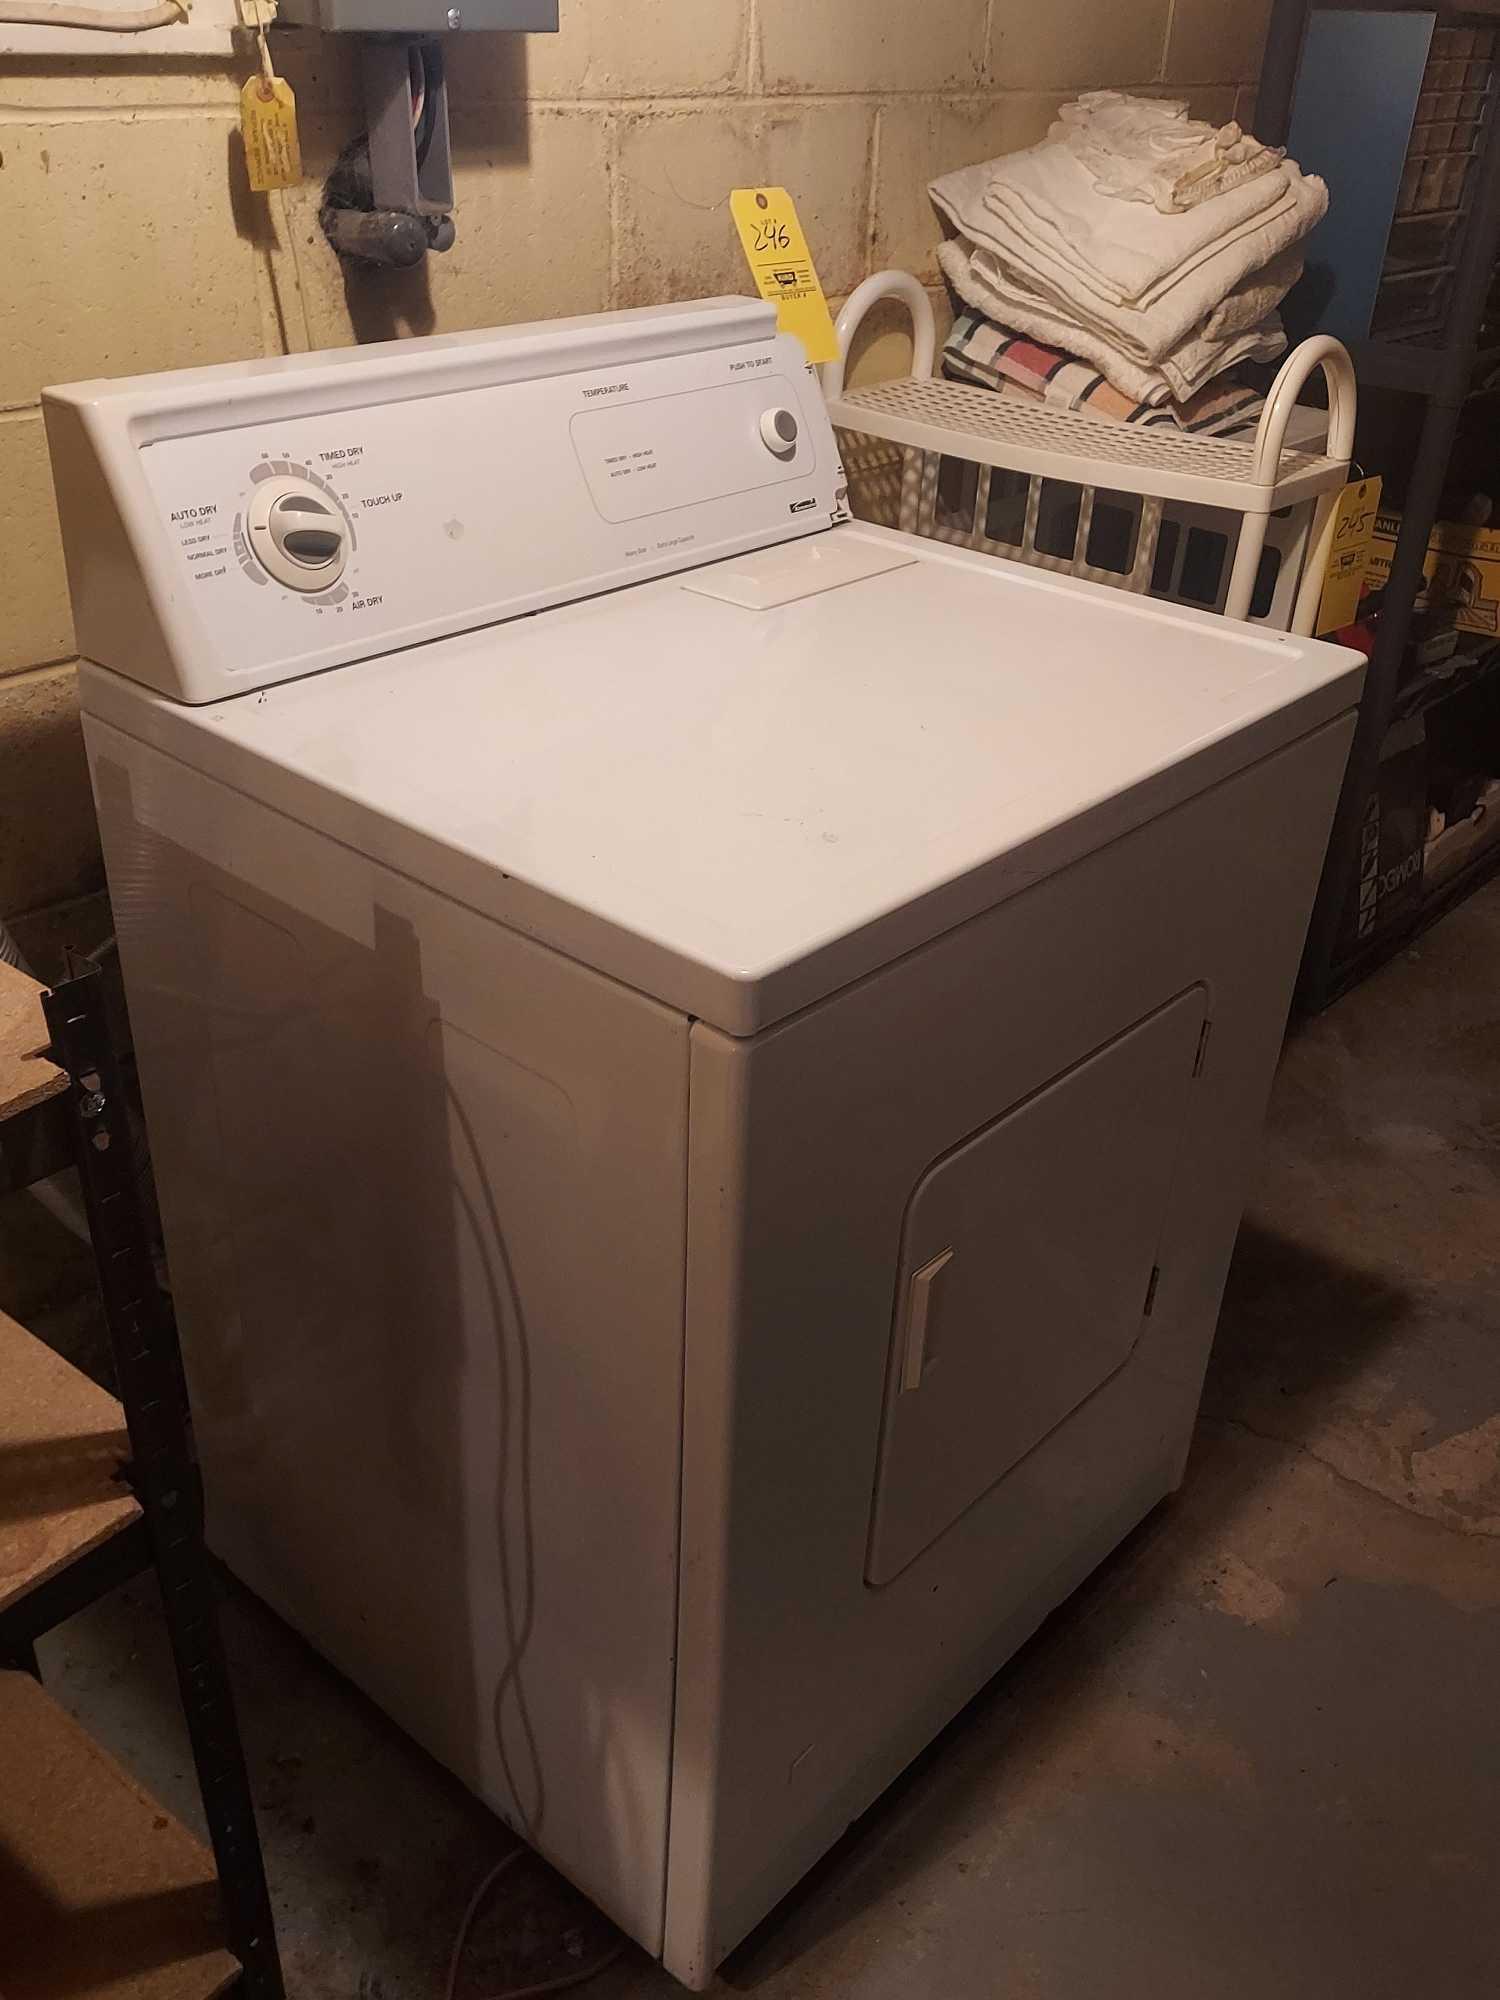 Kenmore Heavy Duty Dryer